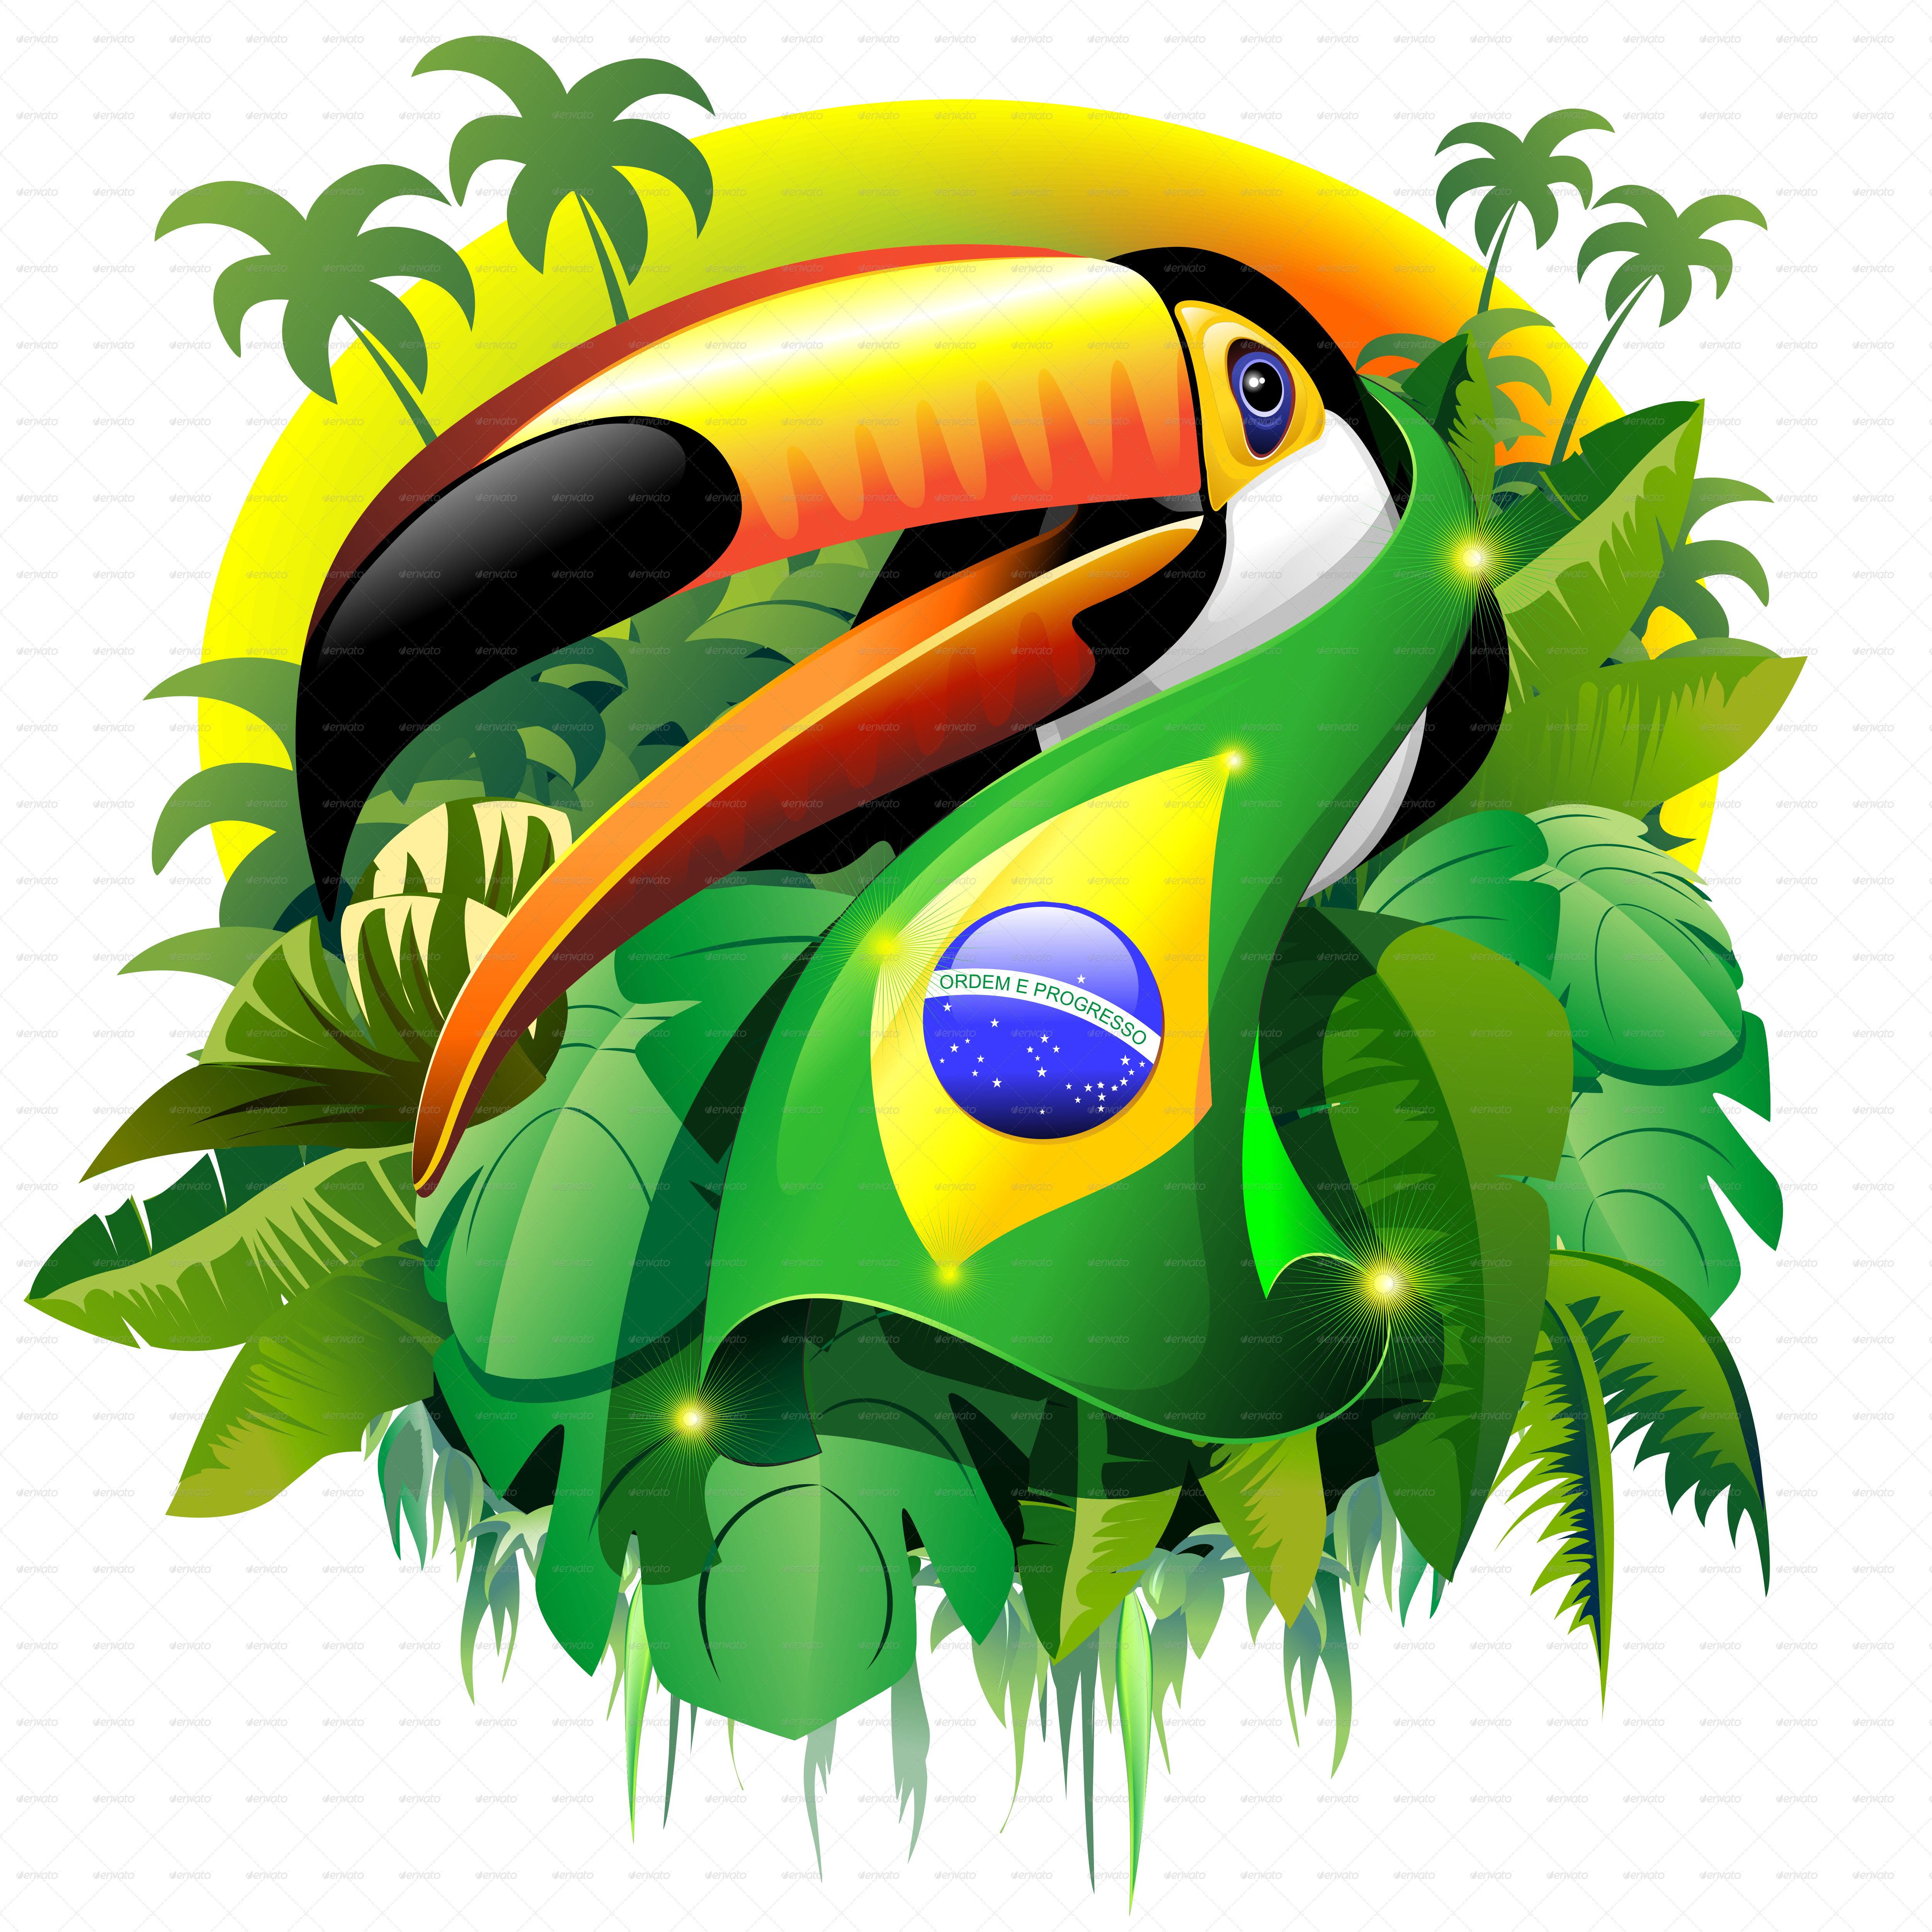 Image - 720px-Flag of Brazil.